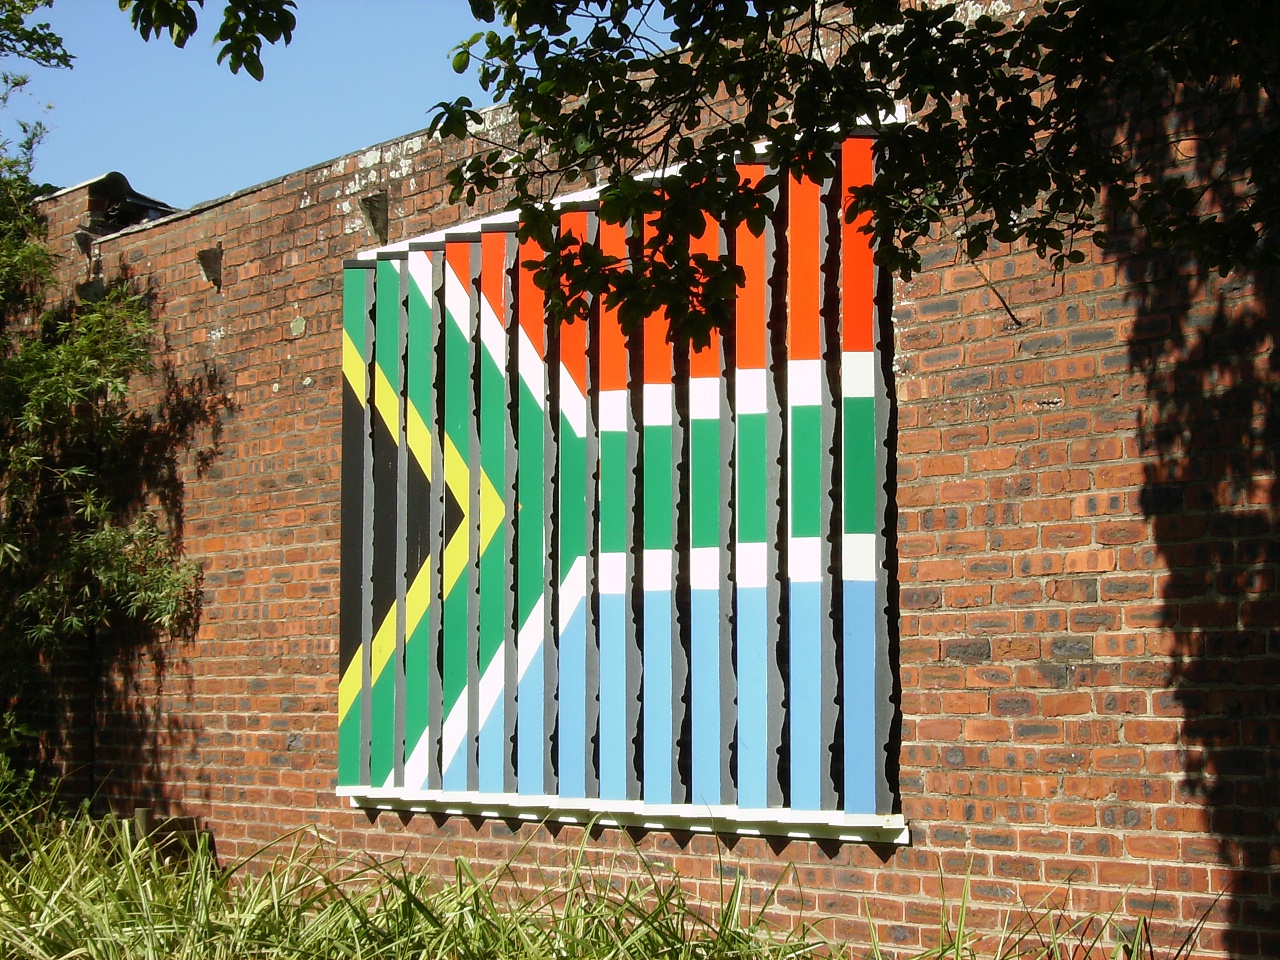 The New Flag / Die nuwe vlag, Durban